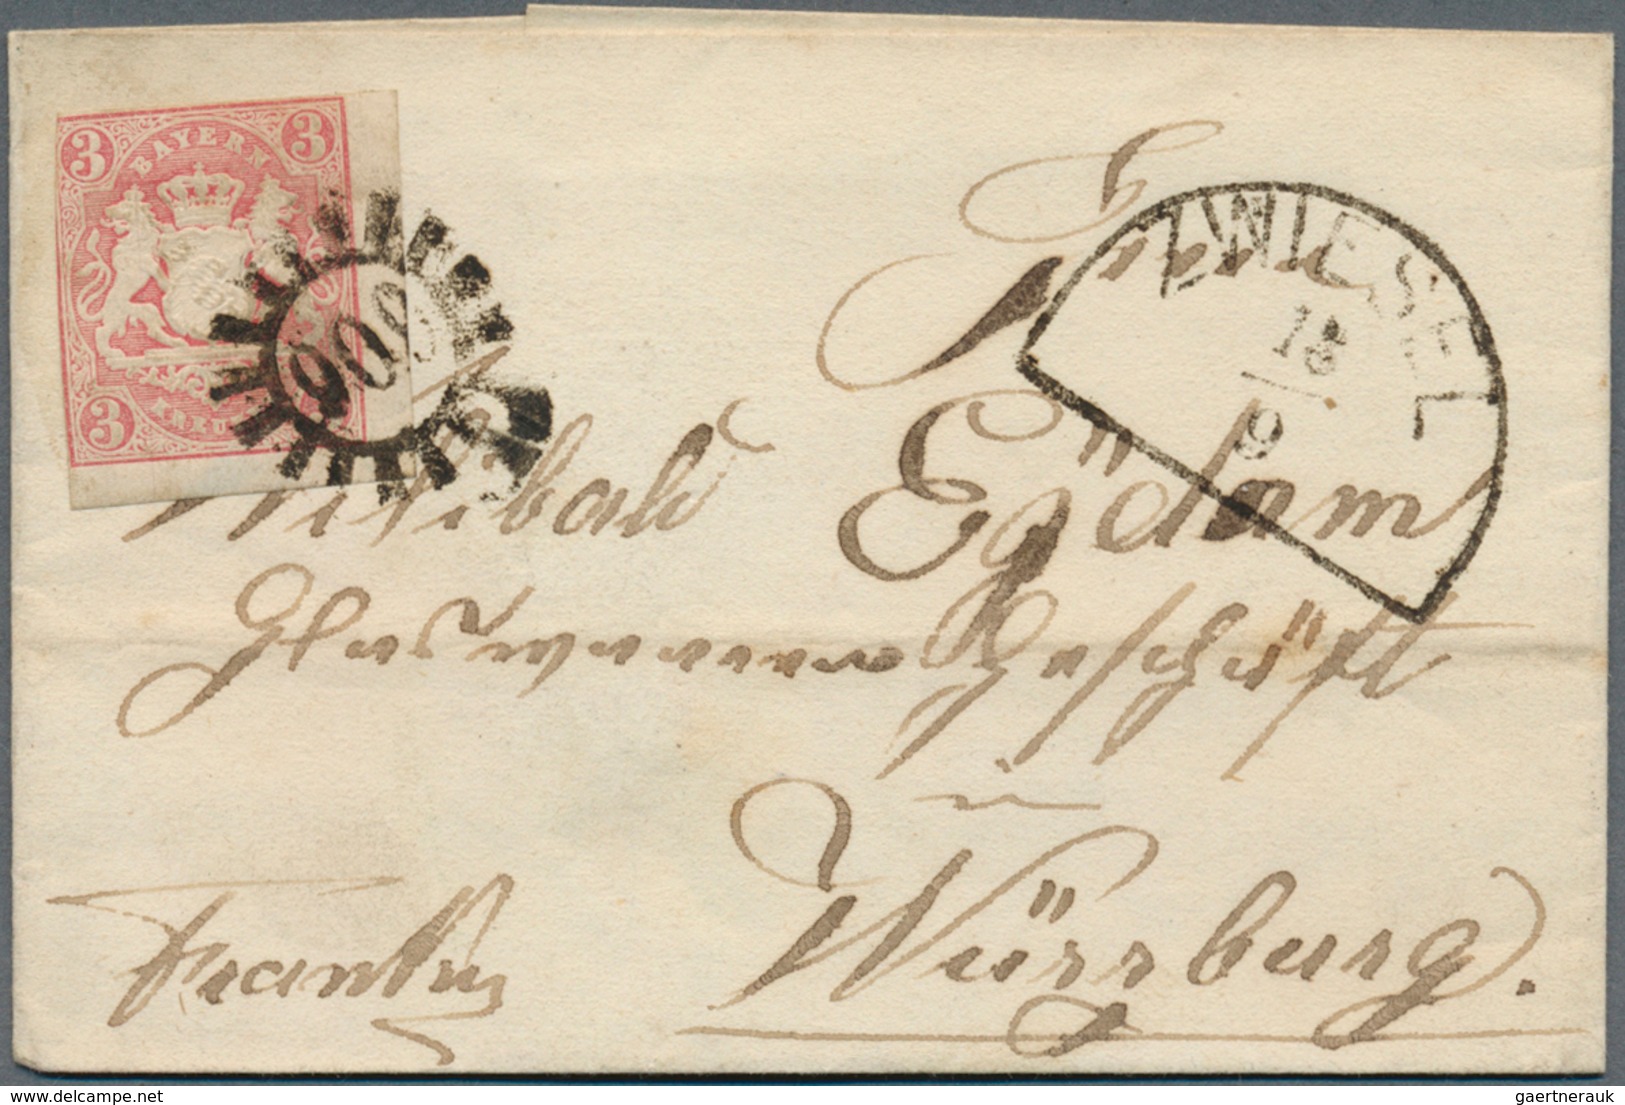 Bayern - Postablagestempel: "Burgreppach POSTABLAGE " L2 auf Brief mit 3 Kr. rot (berührt) + drei we